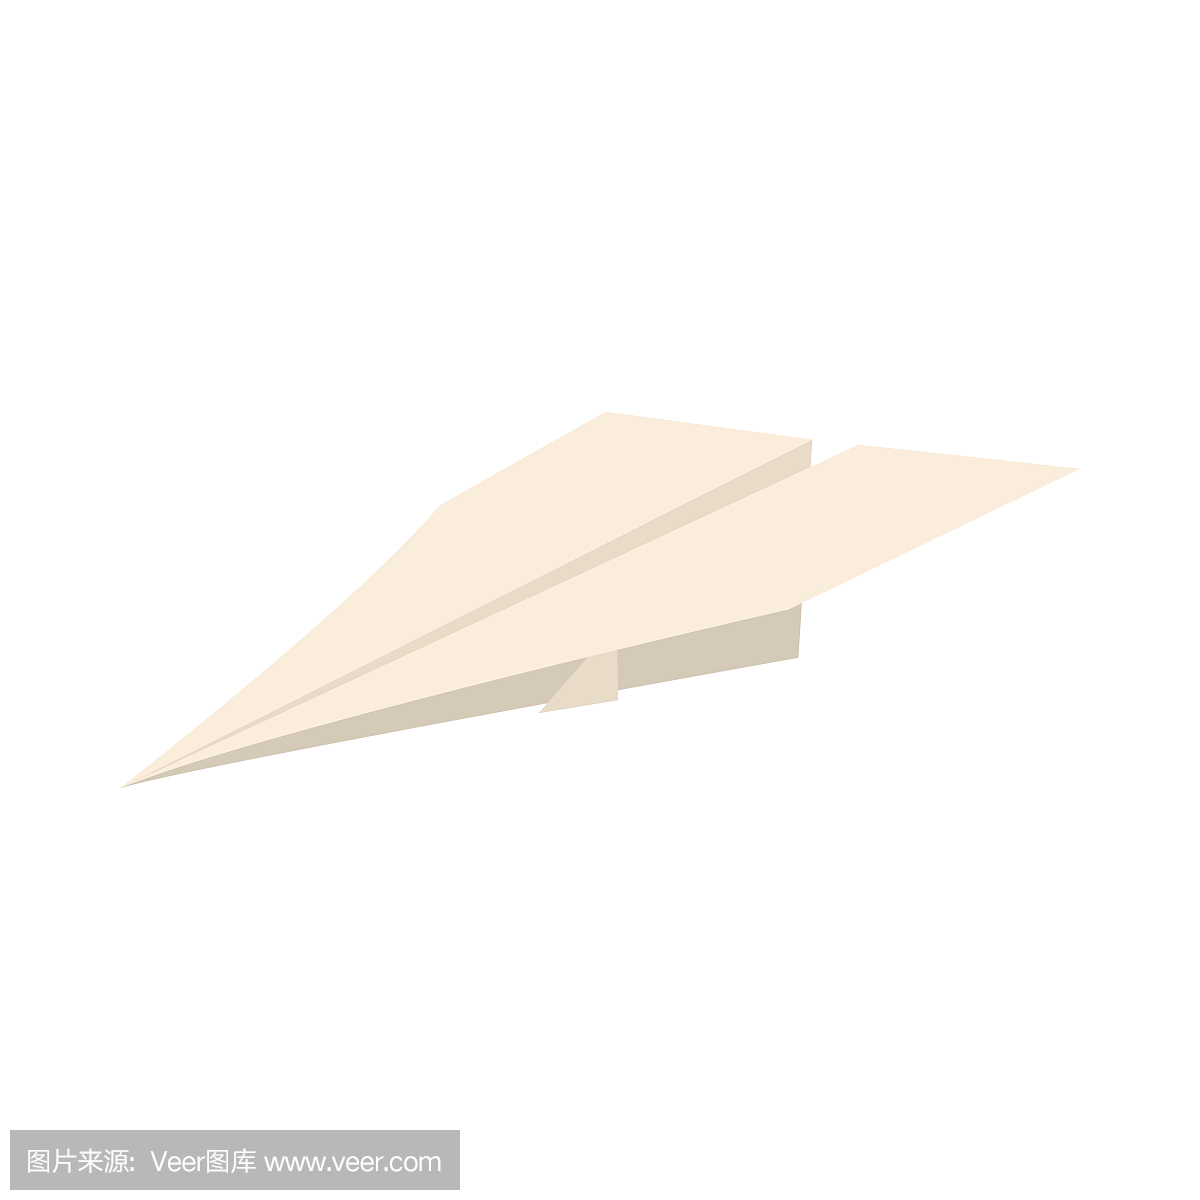 在折纸飞机上画画软件下载